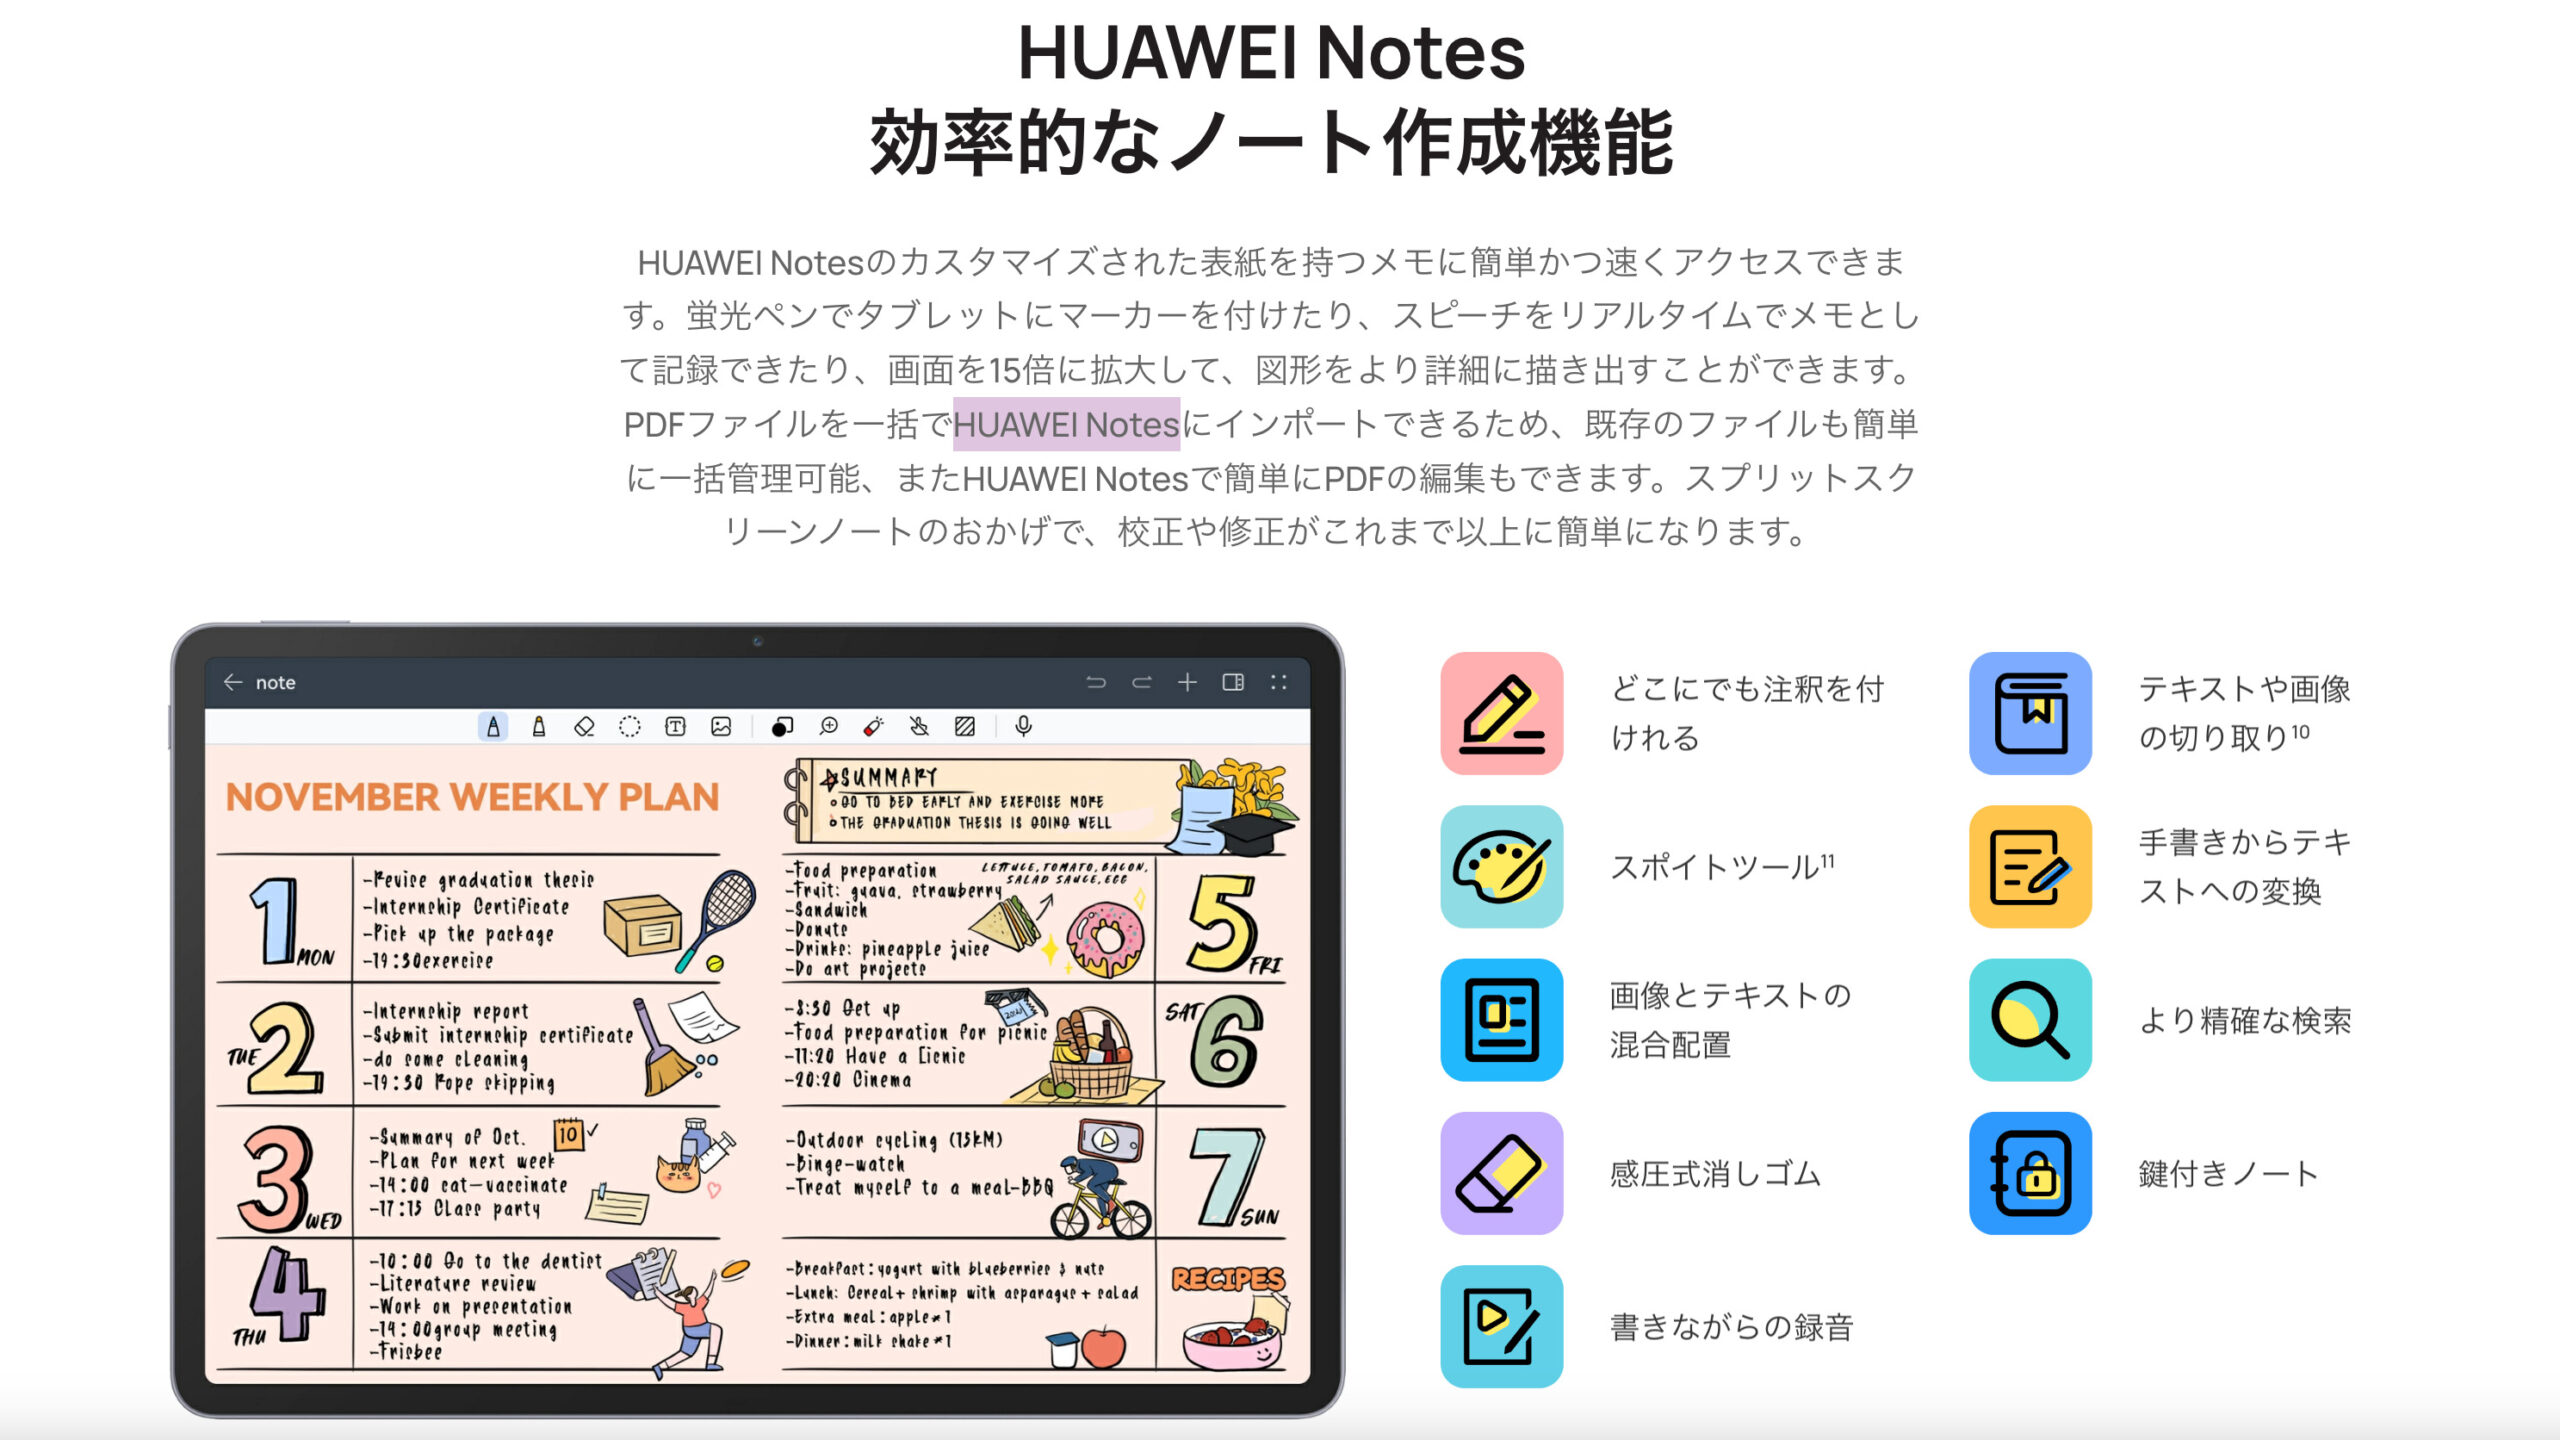 HUAWEI Notes